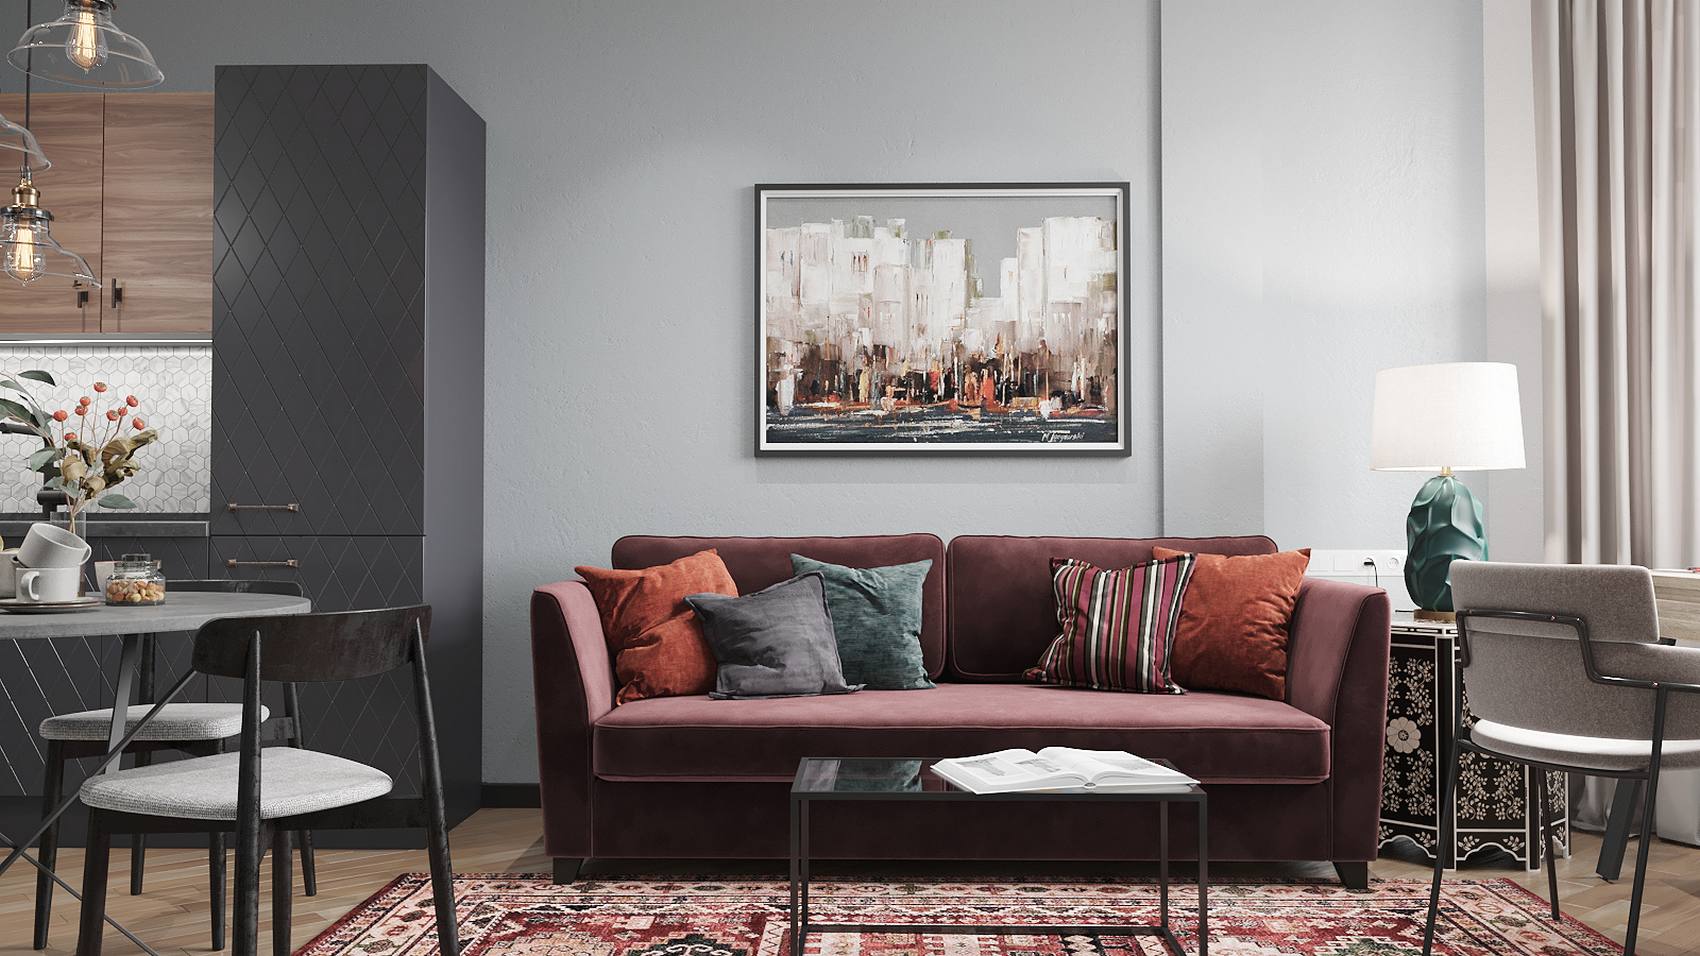 Phòng khách bố trí ghế sofa màu đỏ mận với những chiếc gối tựa đủ sắc màu trấm ấm, đem lại cảm giác êm ái và gần gũi. Thêm vào đó là chiếc bàn nước hình chữ nhật tối giản trên tấm thảm trải sàn họa tiết nổi bật.